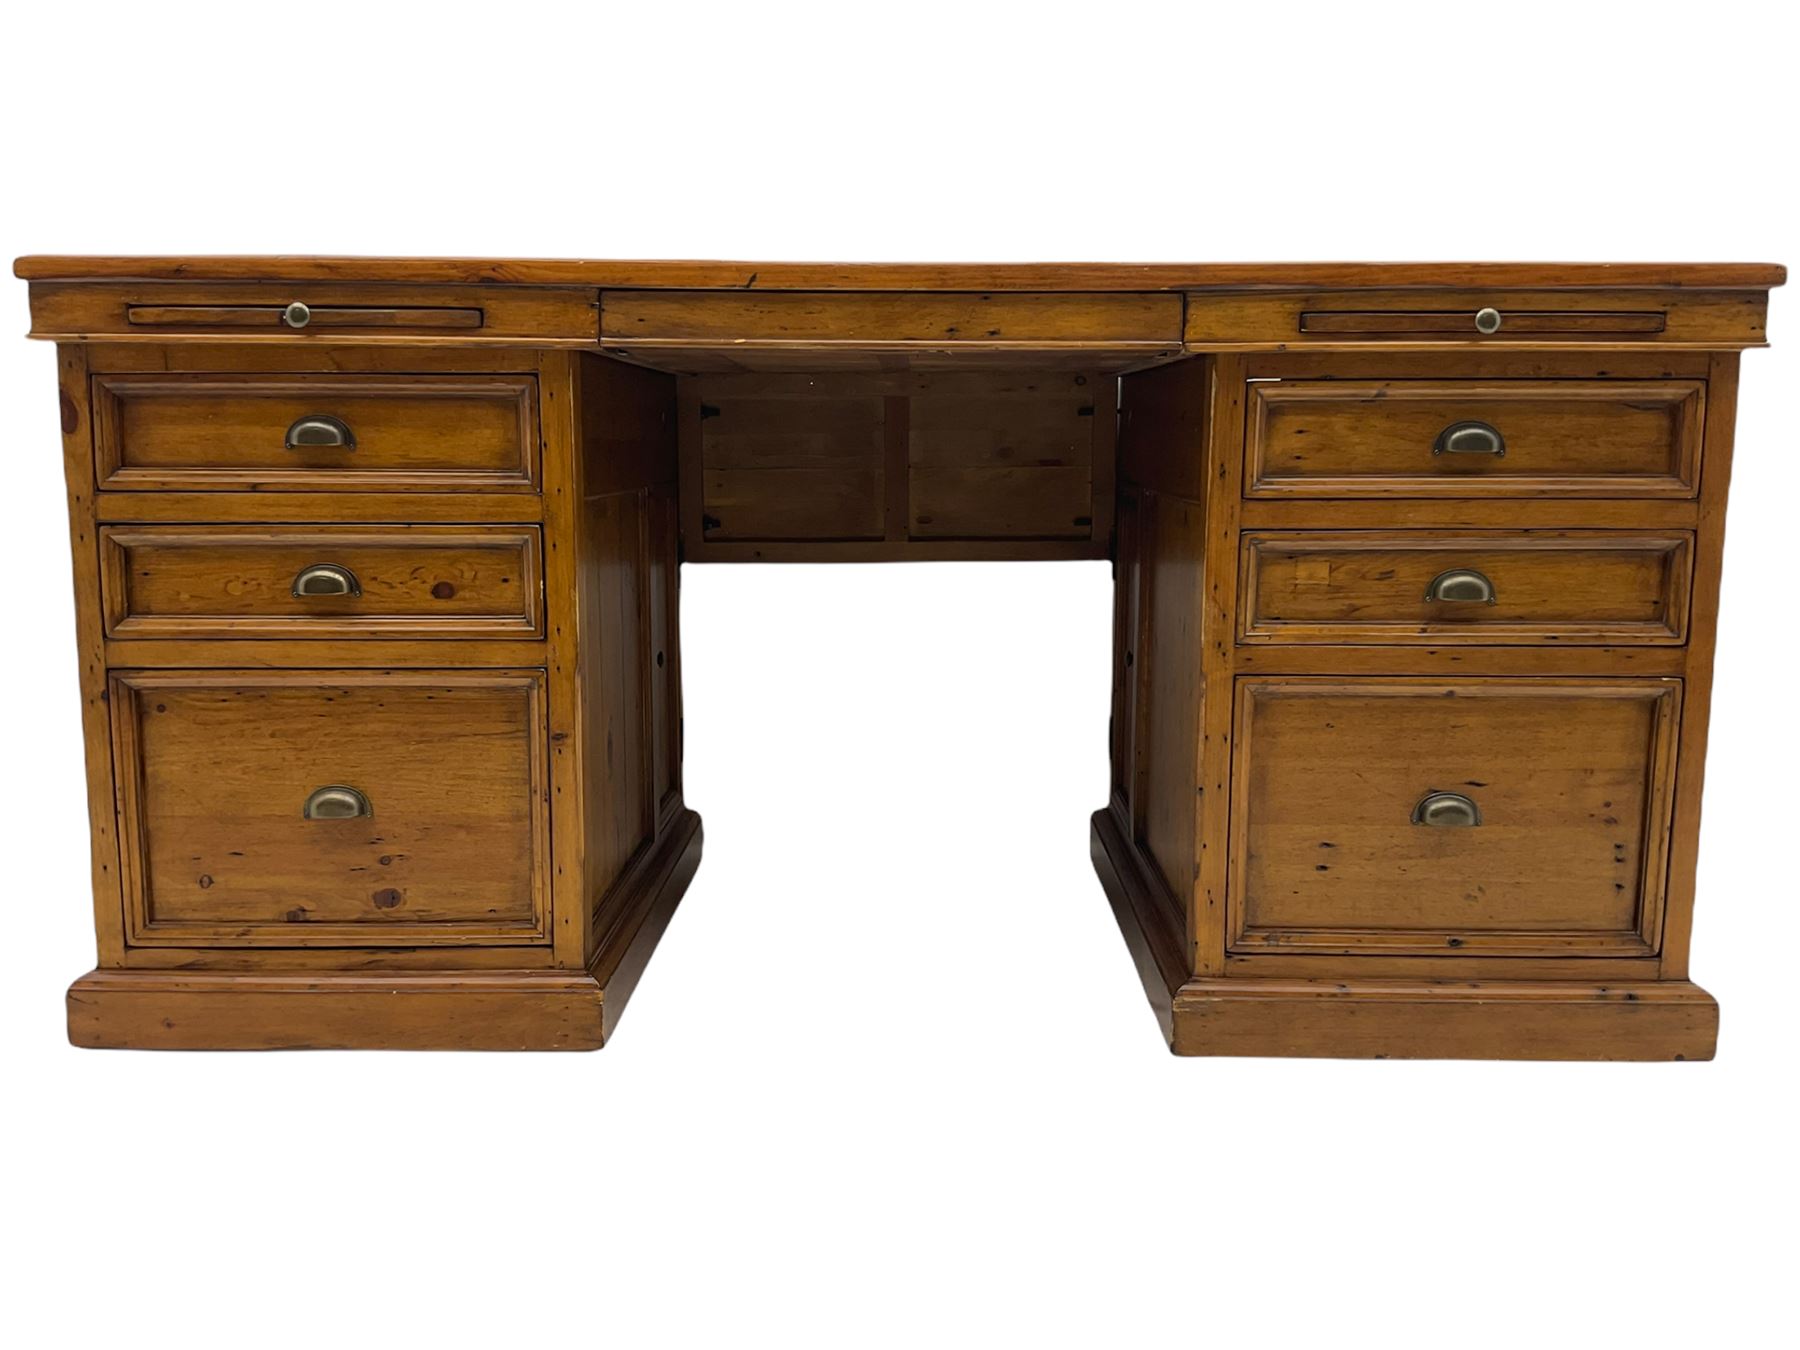 Barker & Stonehouse - Villiers reclaimed eastern pine twin pedestal desk